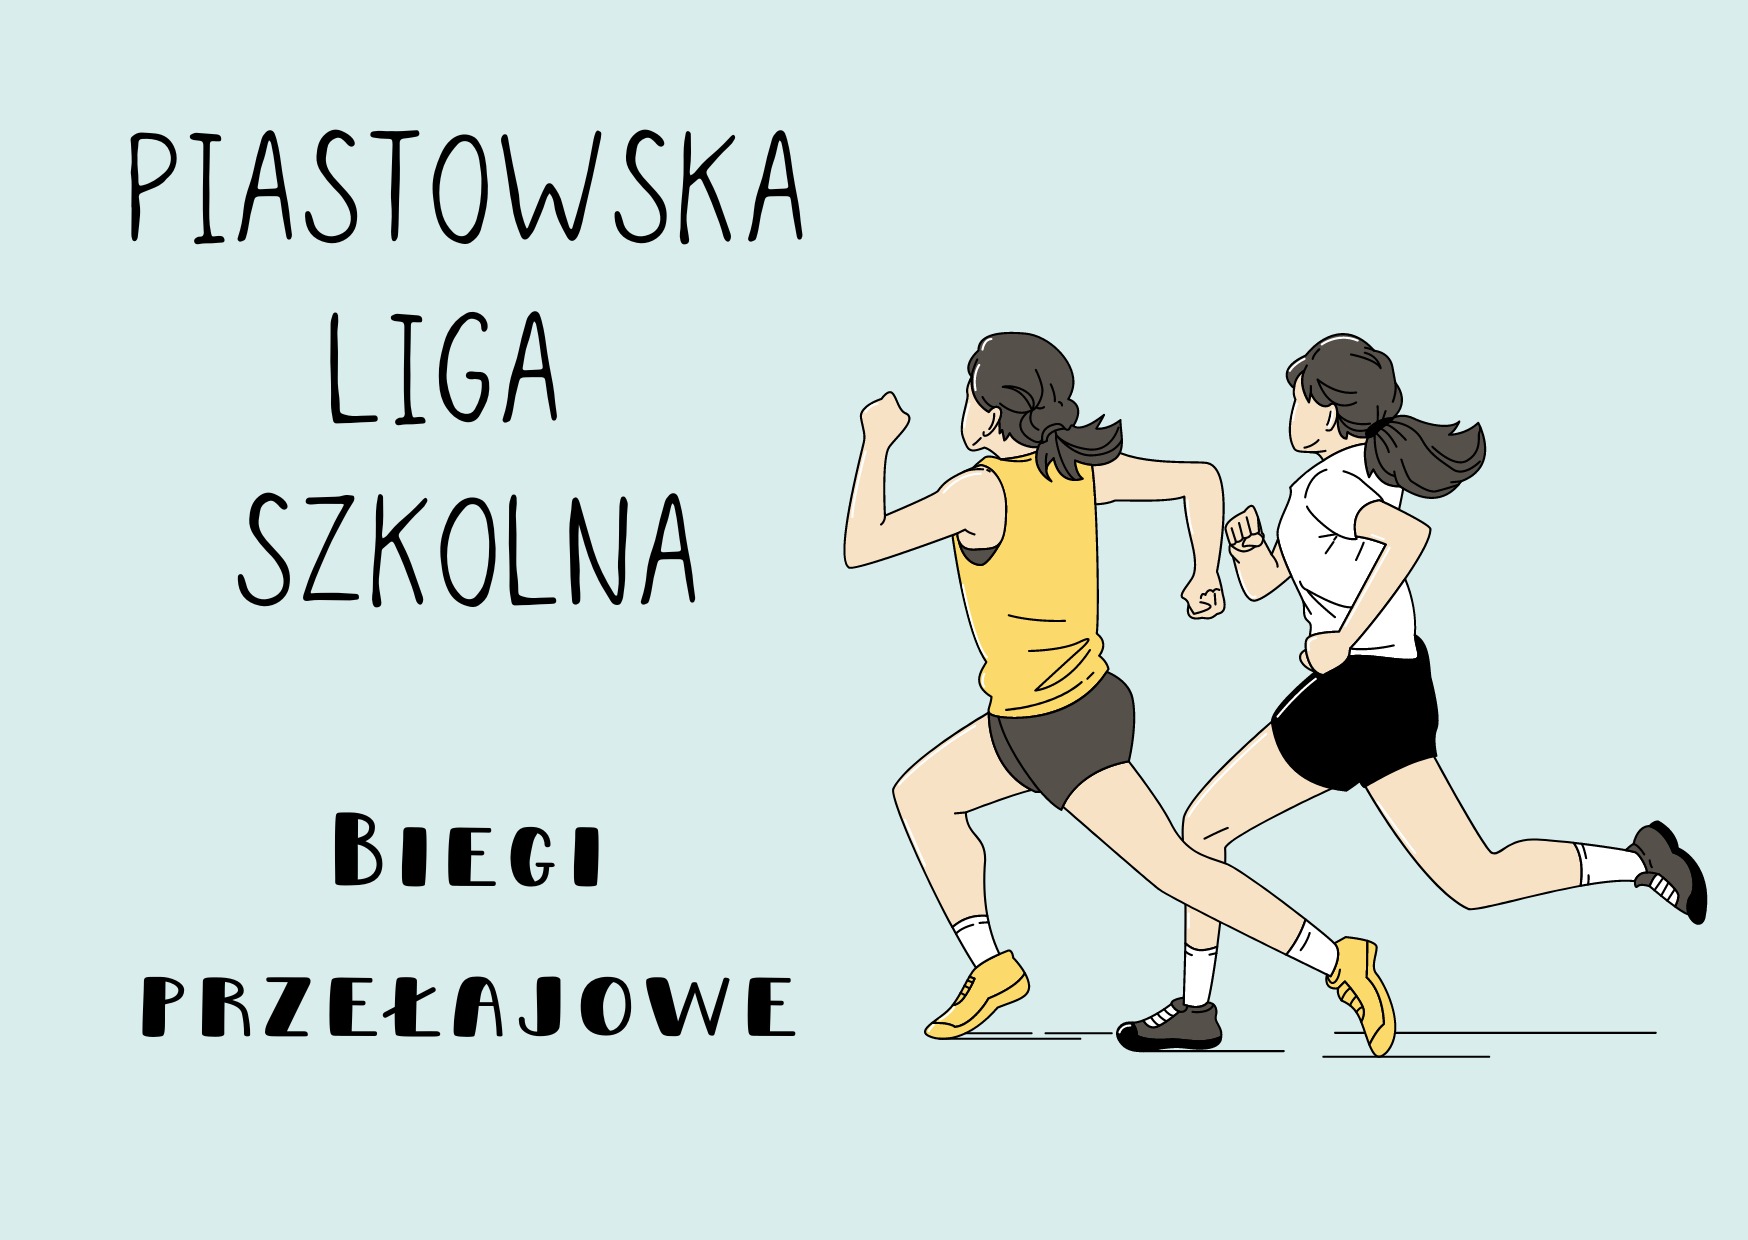 Piastowska Liga Szkolna - biegi przełajowe dziewcząt - Obrazek 1